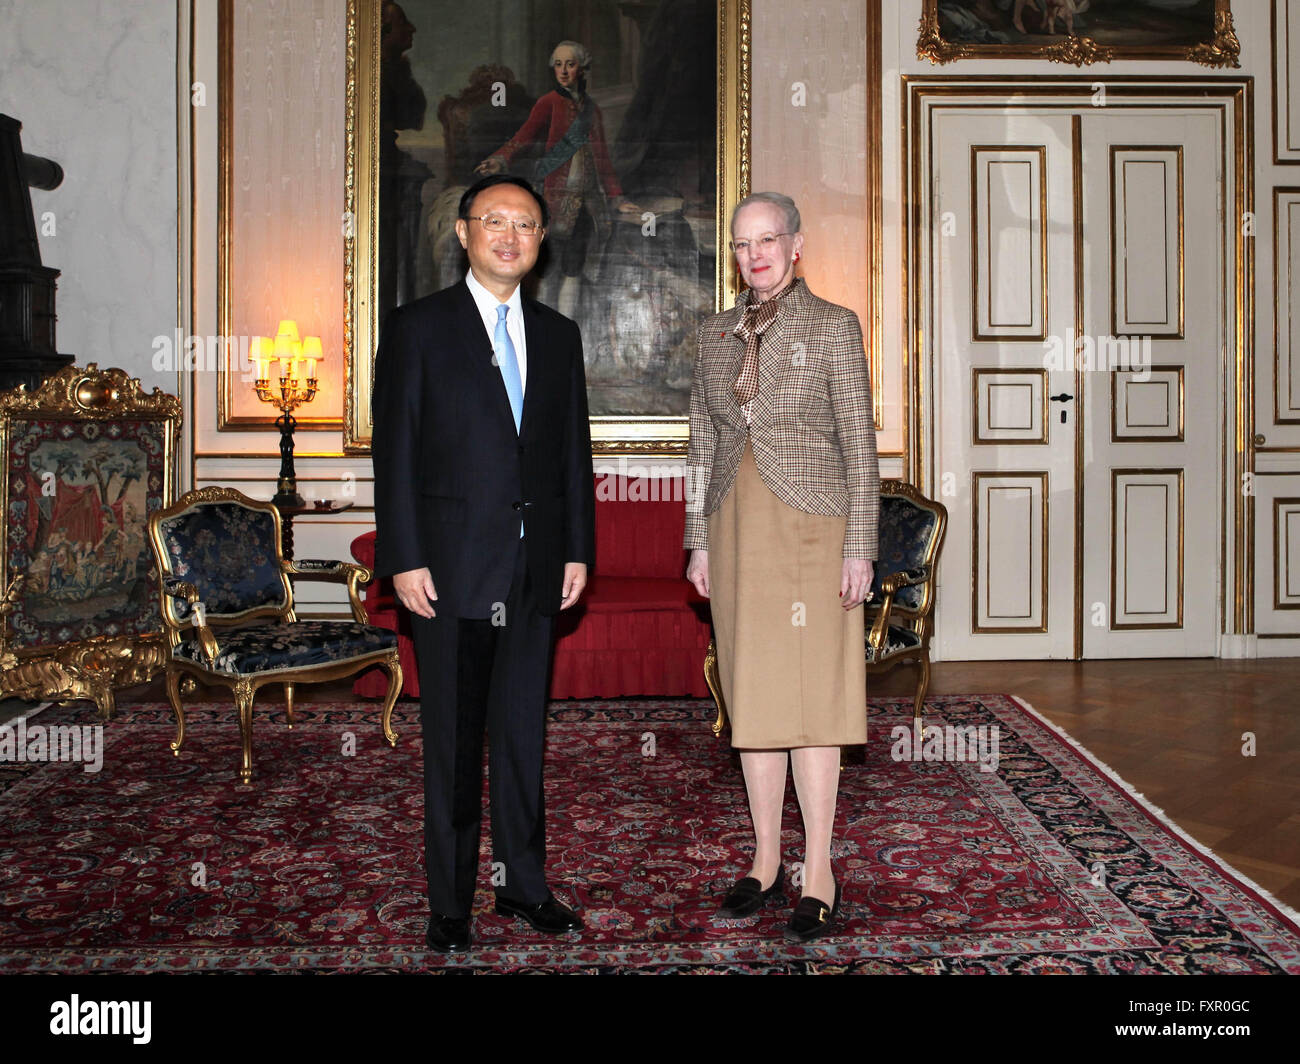 (160417) -- COPENHAGUE, 17 avril 2016 (Xinhua) -- La Reine Margrethe II du Danemark se réunit lors de la visite du conseiller d'Etat chinois Yang Jiechi à Copenhague, Danemark, le 17 avril 2016. (Xinhua/Shouhe Shi) Banque D'Images